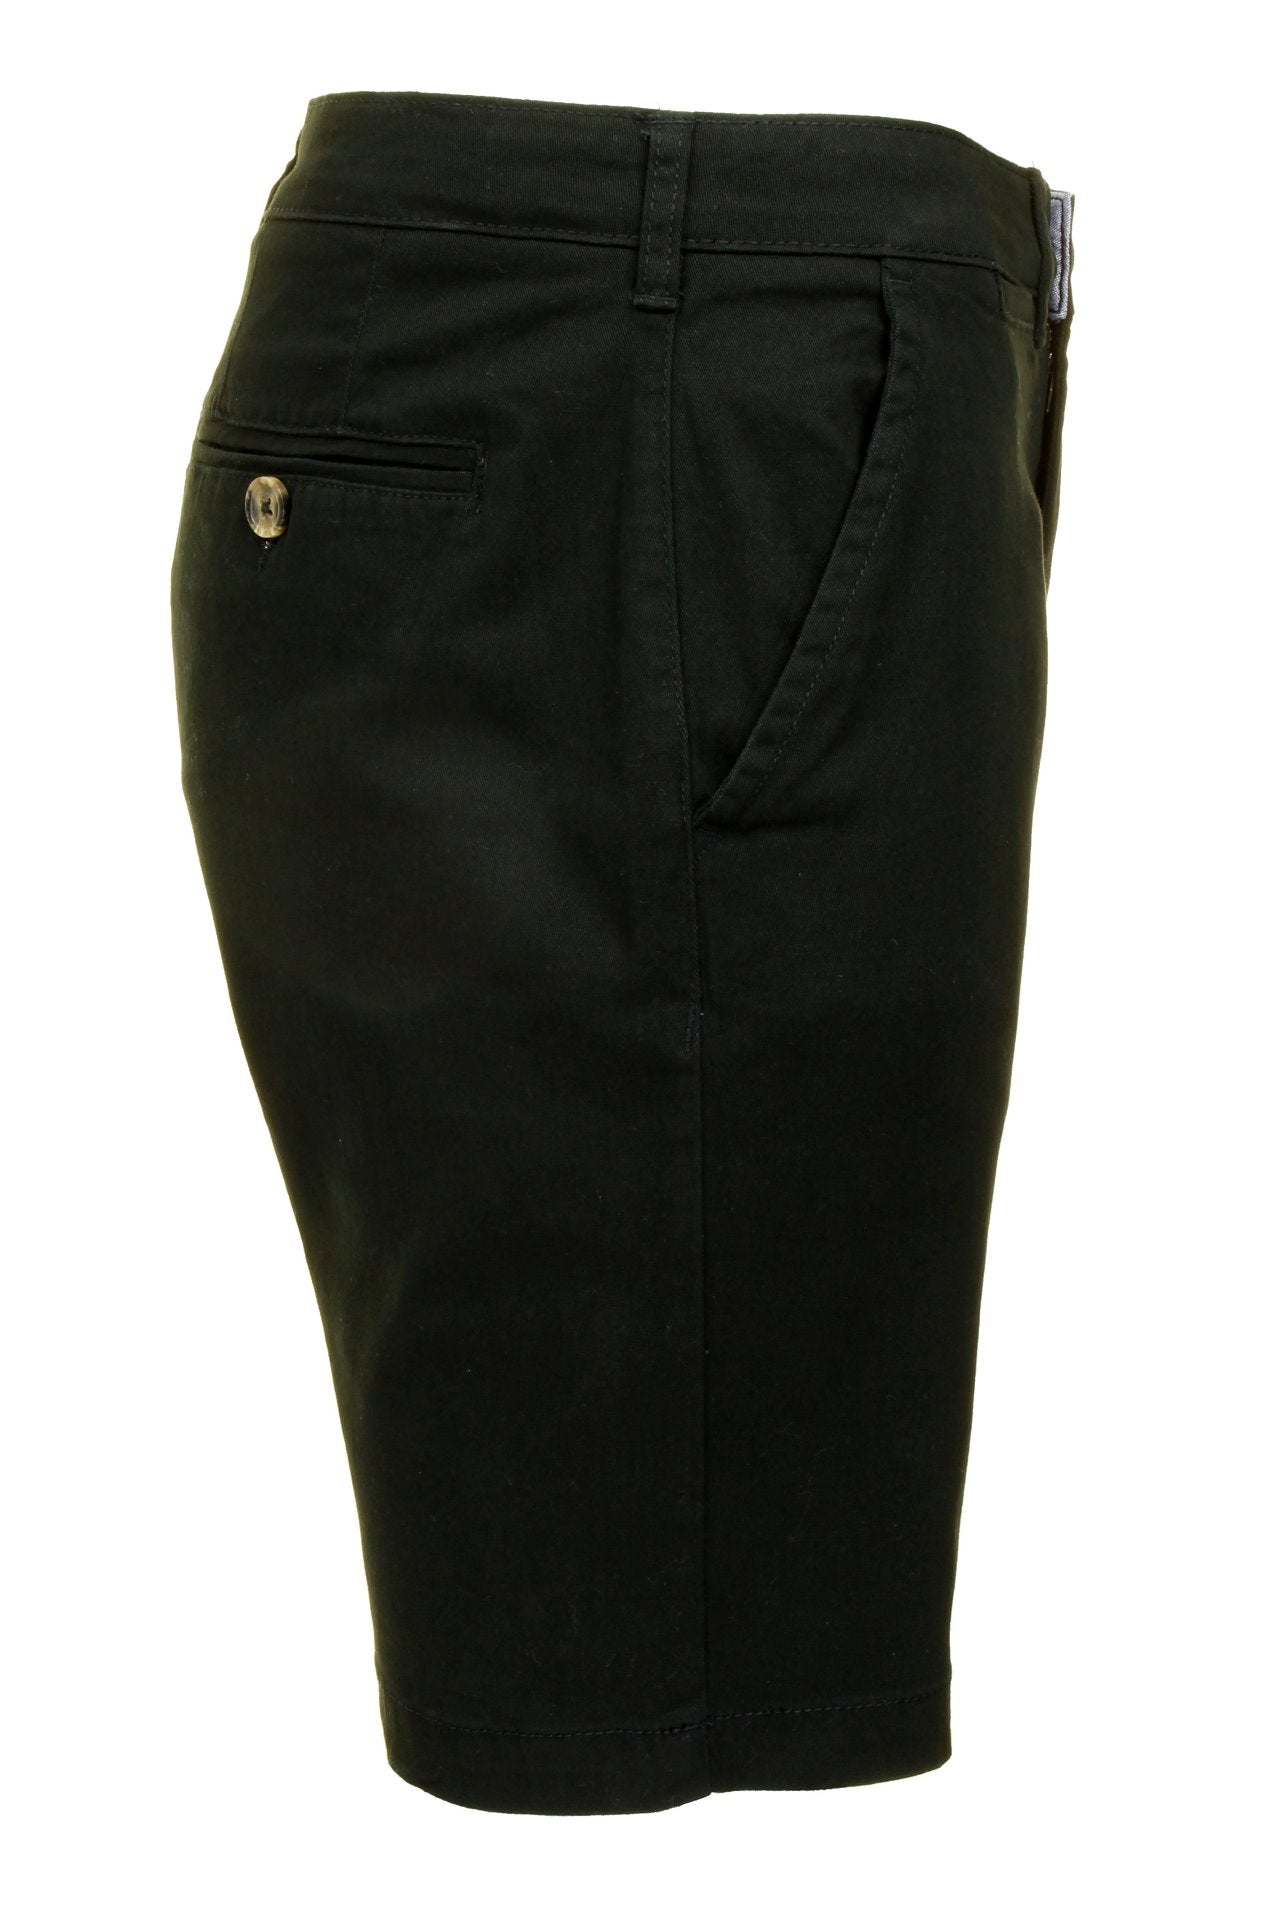 Xact Chino Shorts Mens Soft Feel Cotton Fashion Garment-2